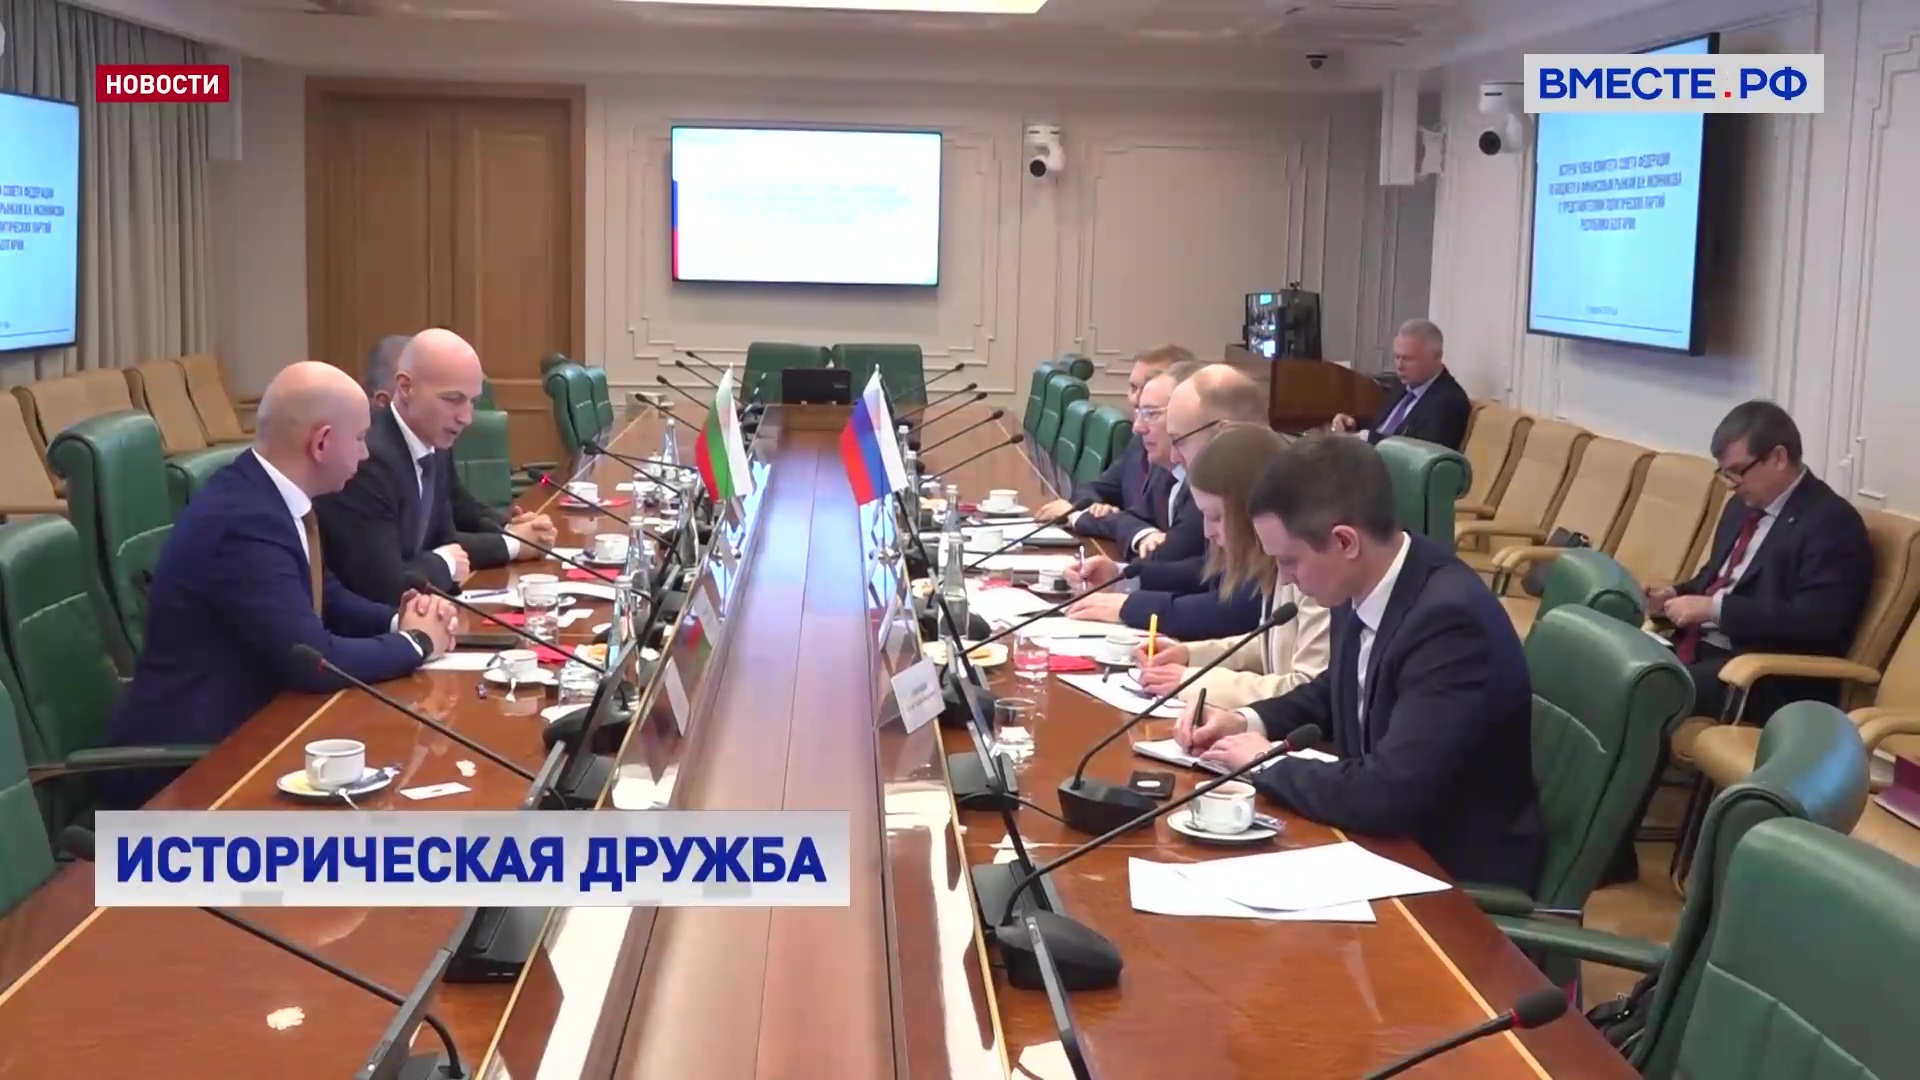 РФ будет стремиться к диалогу с конструктивными силами в Болгарии, заявляют в СФ